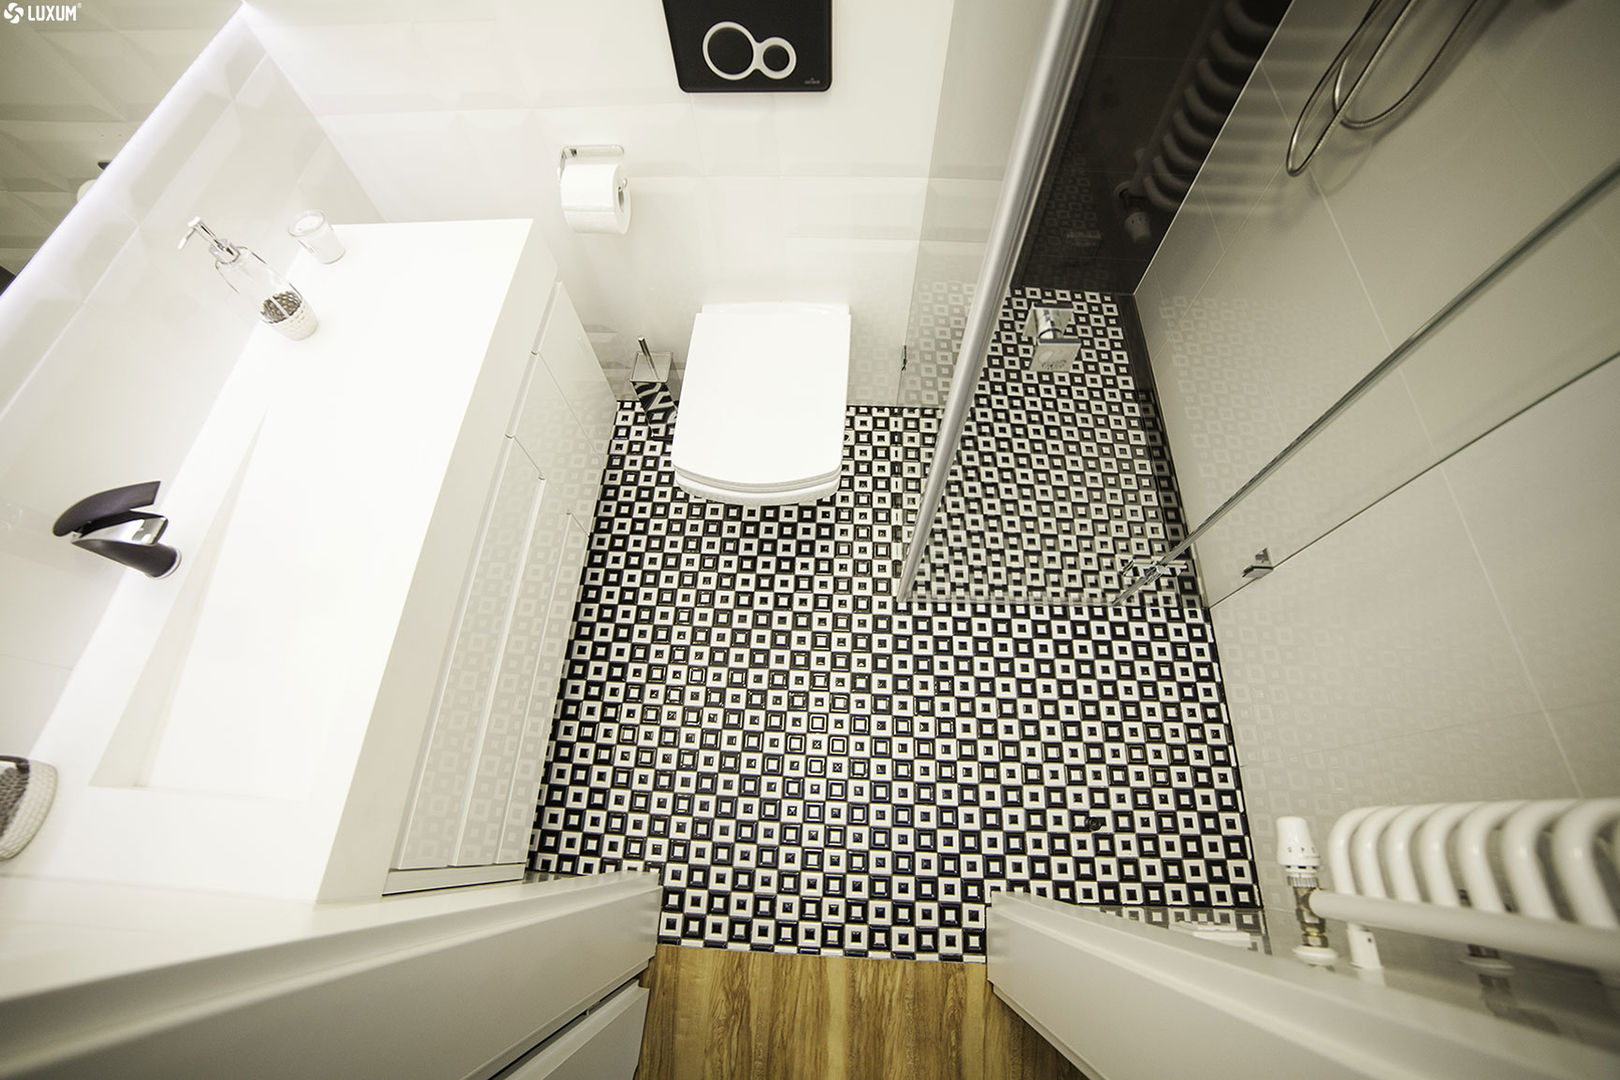 Prostokątna umywalka z odpływem liniowym od Luxum. , Luxum Luxum Scandinavian style bathroom